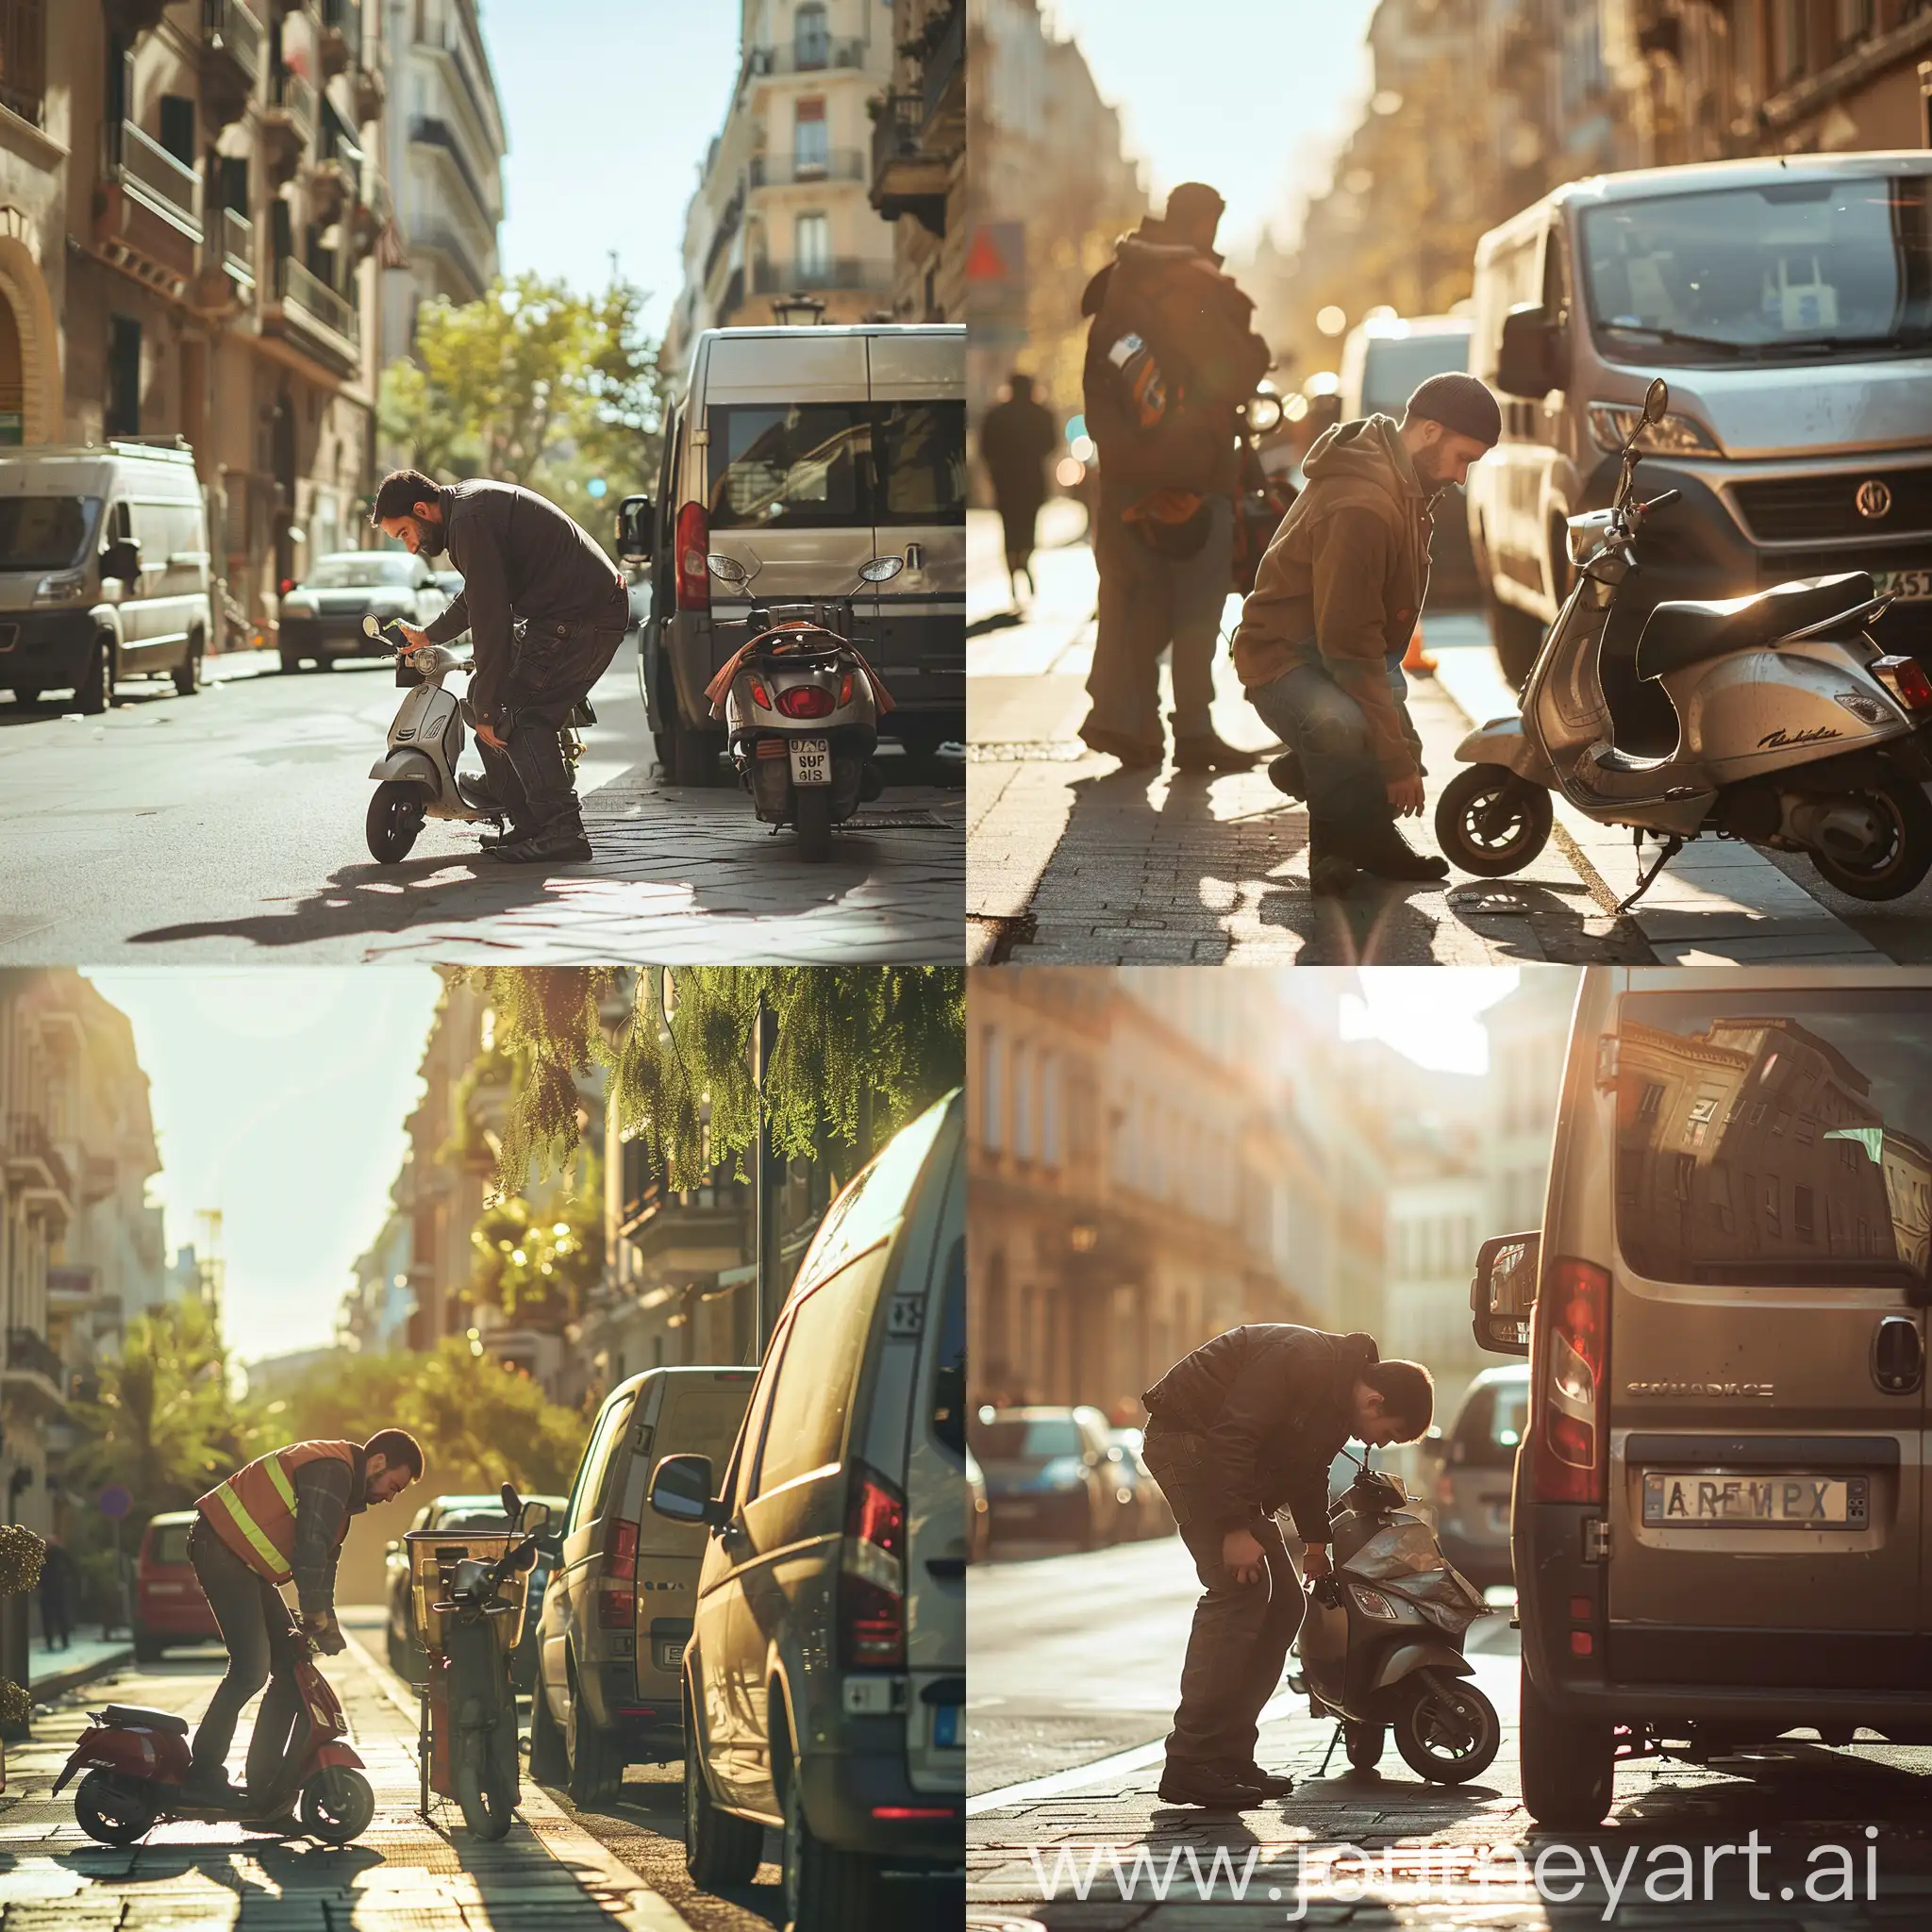 lavoratore professionale che si china su un monopattino  parcheggiato in strada in città durante una giornata soleggiata con un furgone parcheggiato